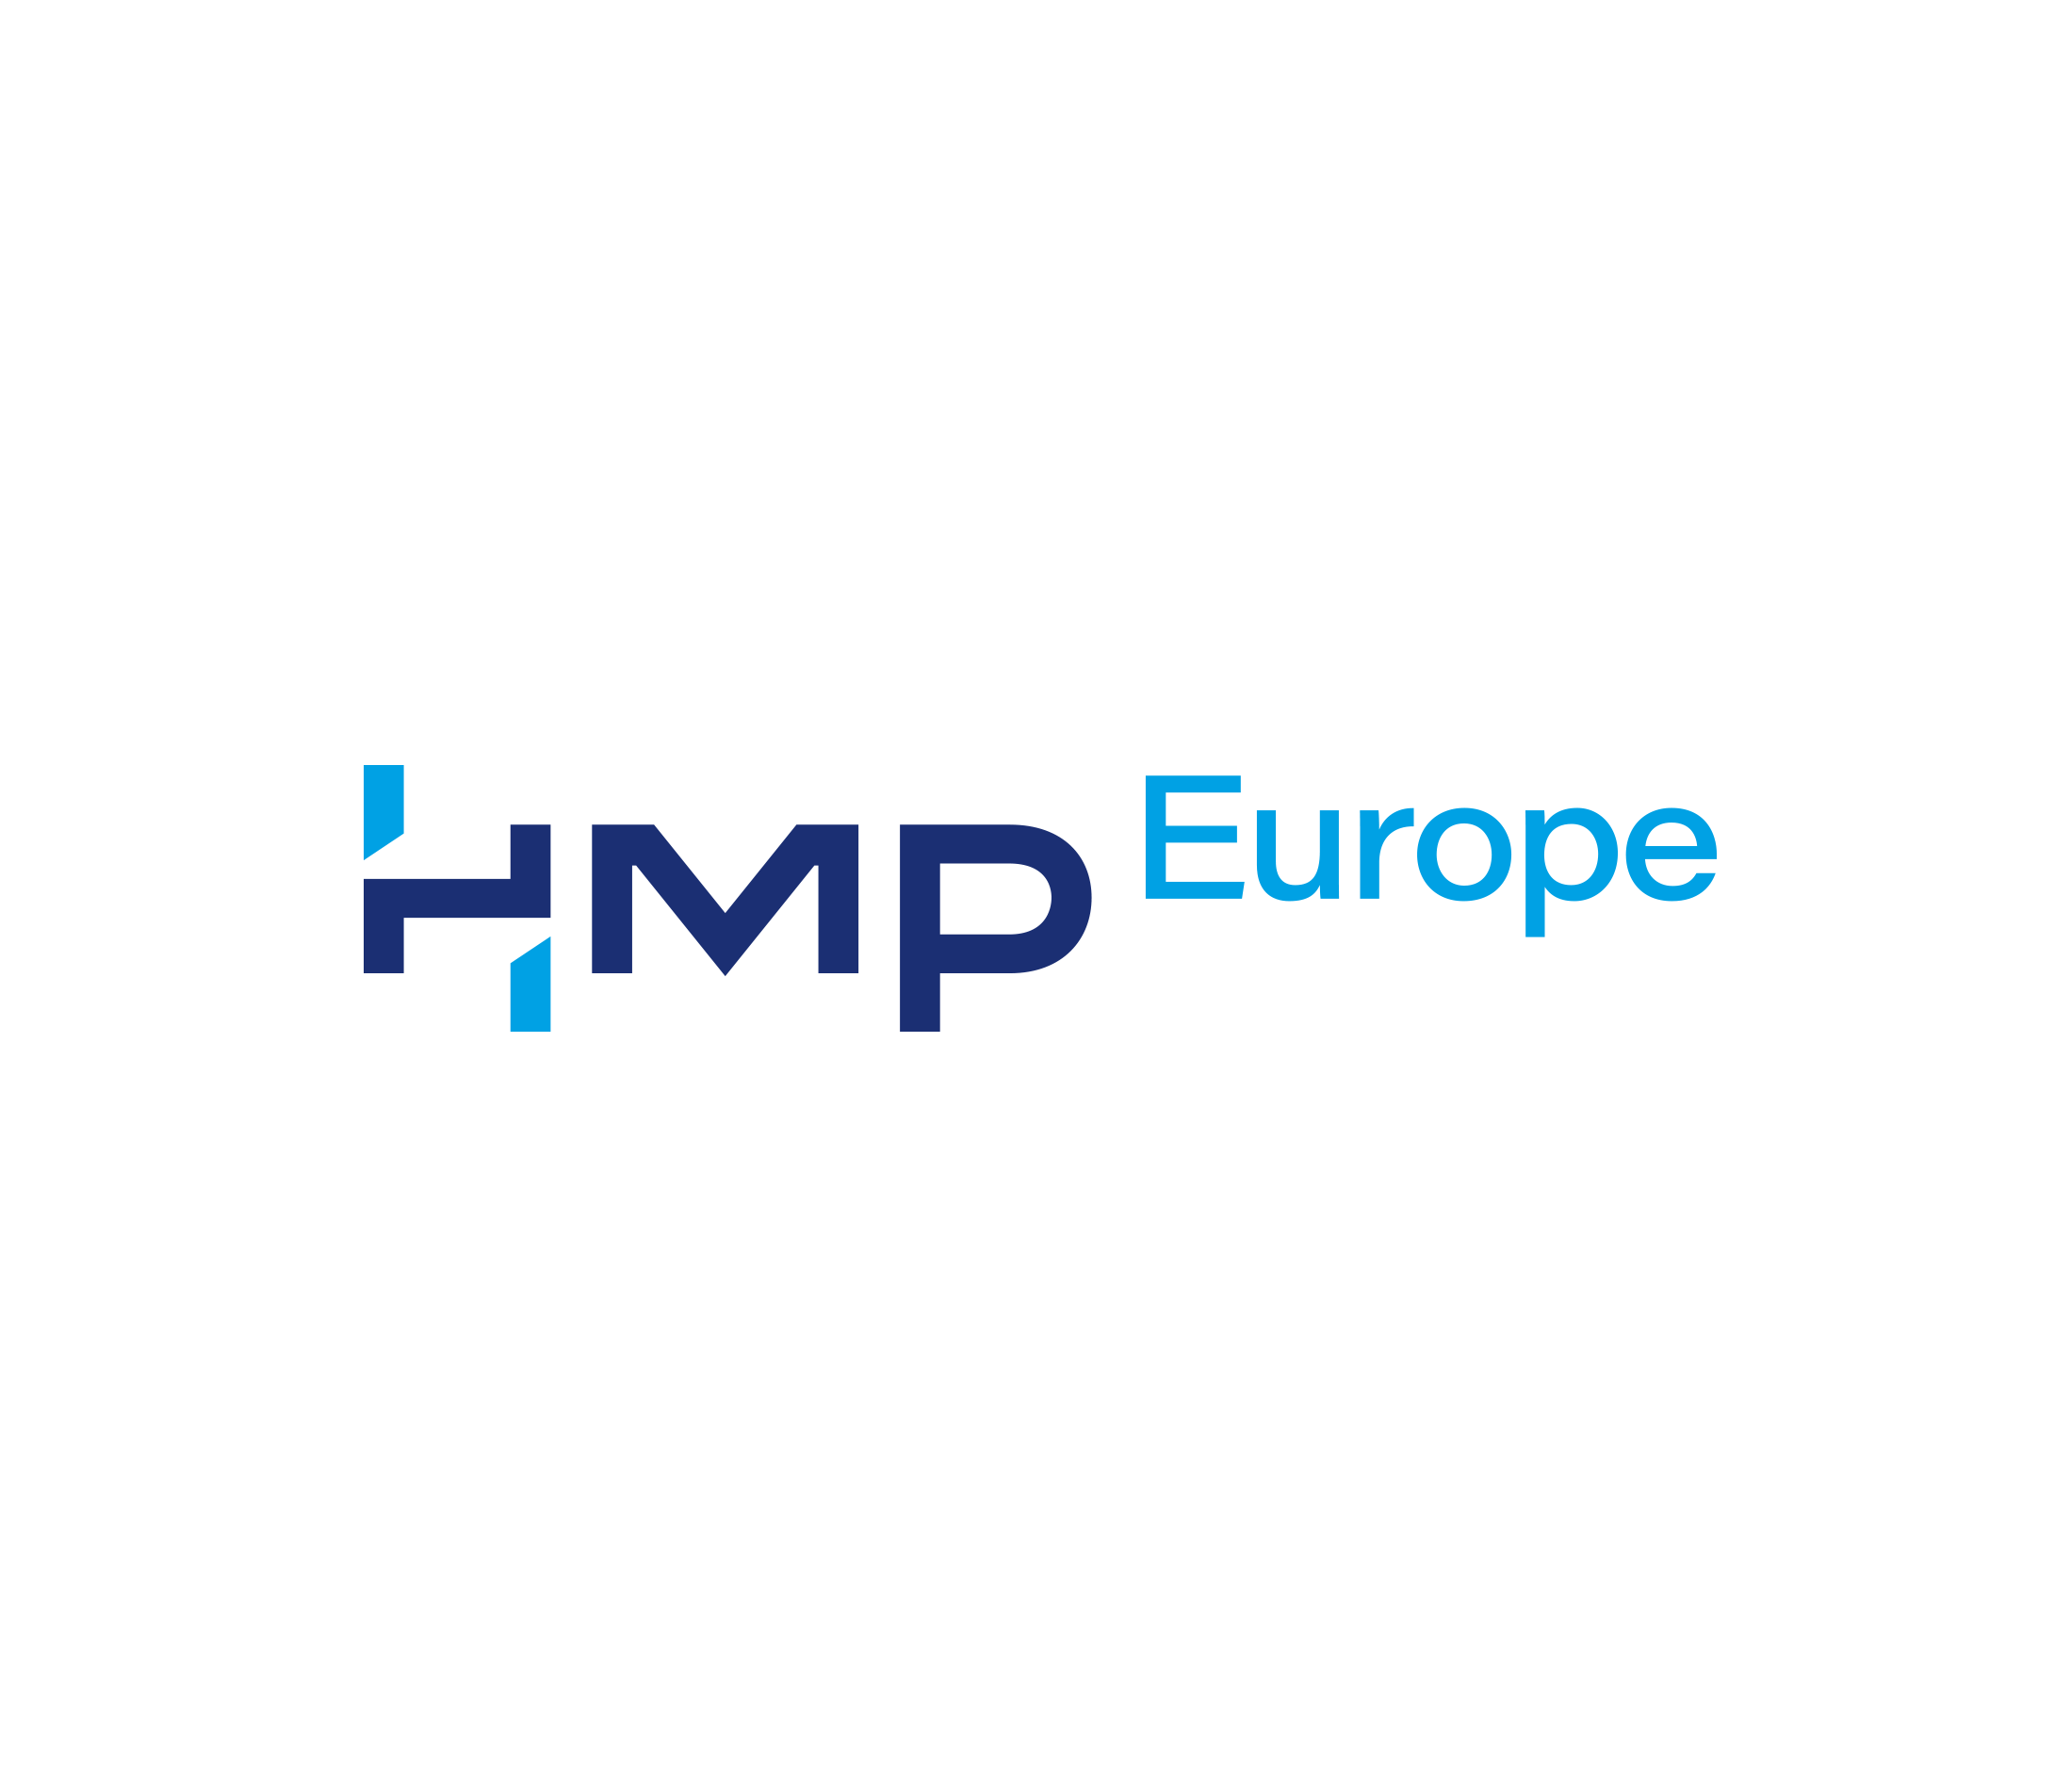 HMP Europe